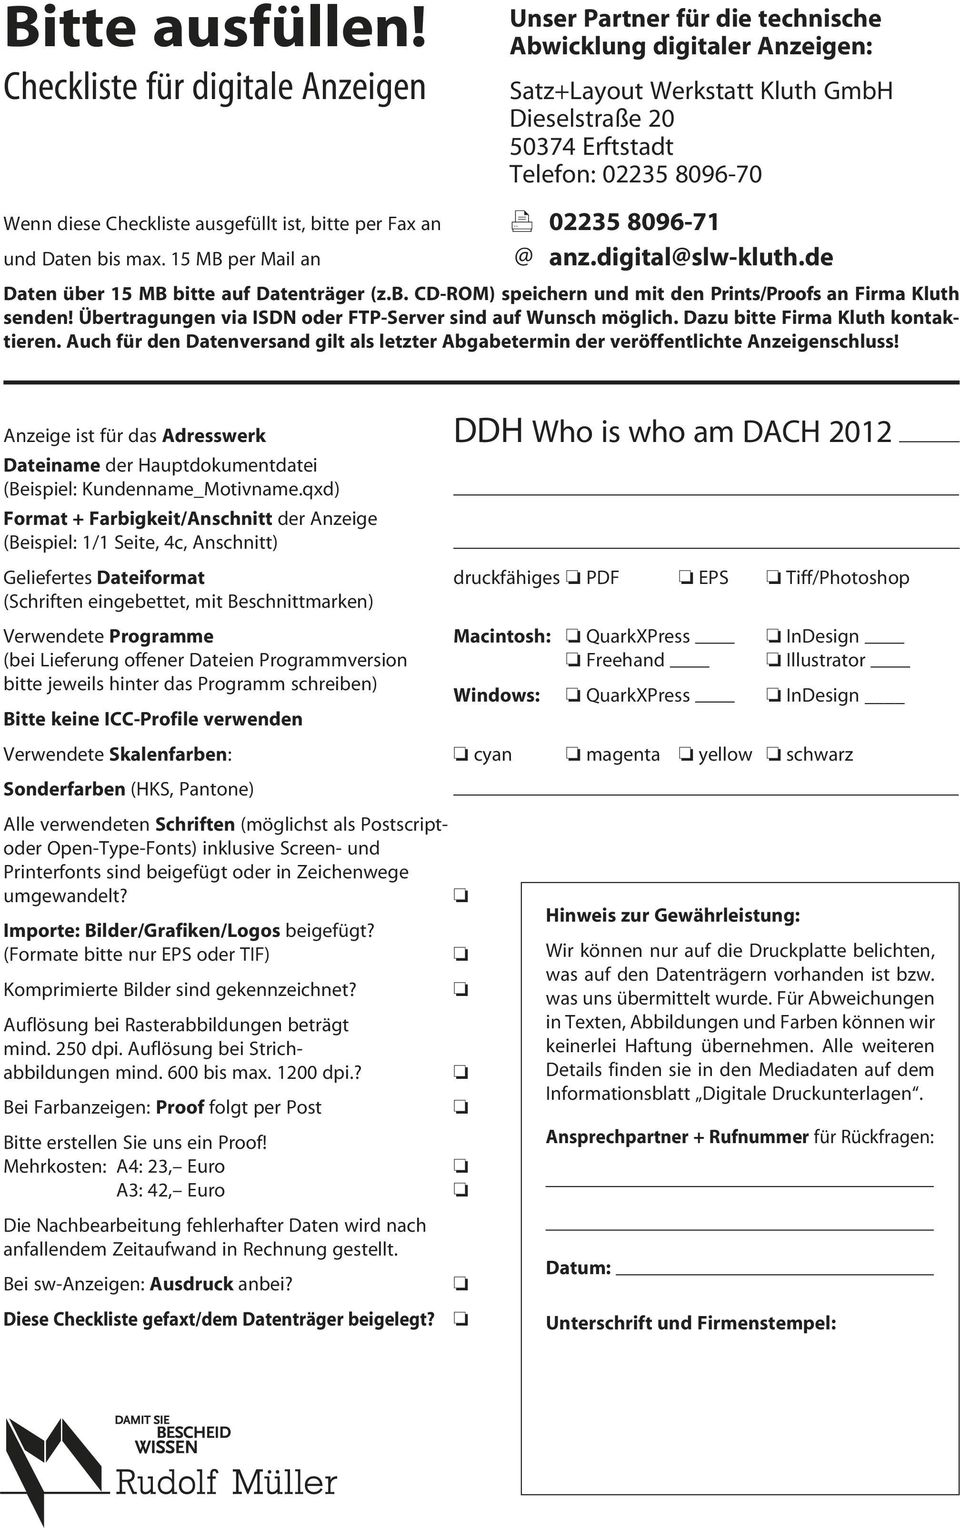 Anzeige ist für das Adresswerk DDH Wh is wh am Dach 2012 Dateiname der Hauptdkumentdatei (Beispiel: Kundenname_Mtivname.